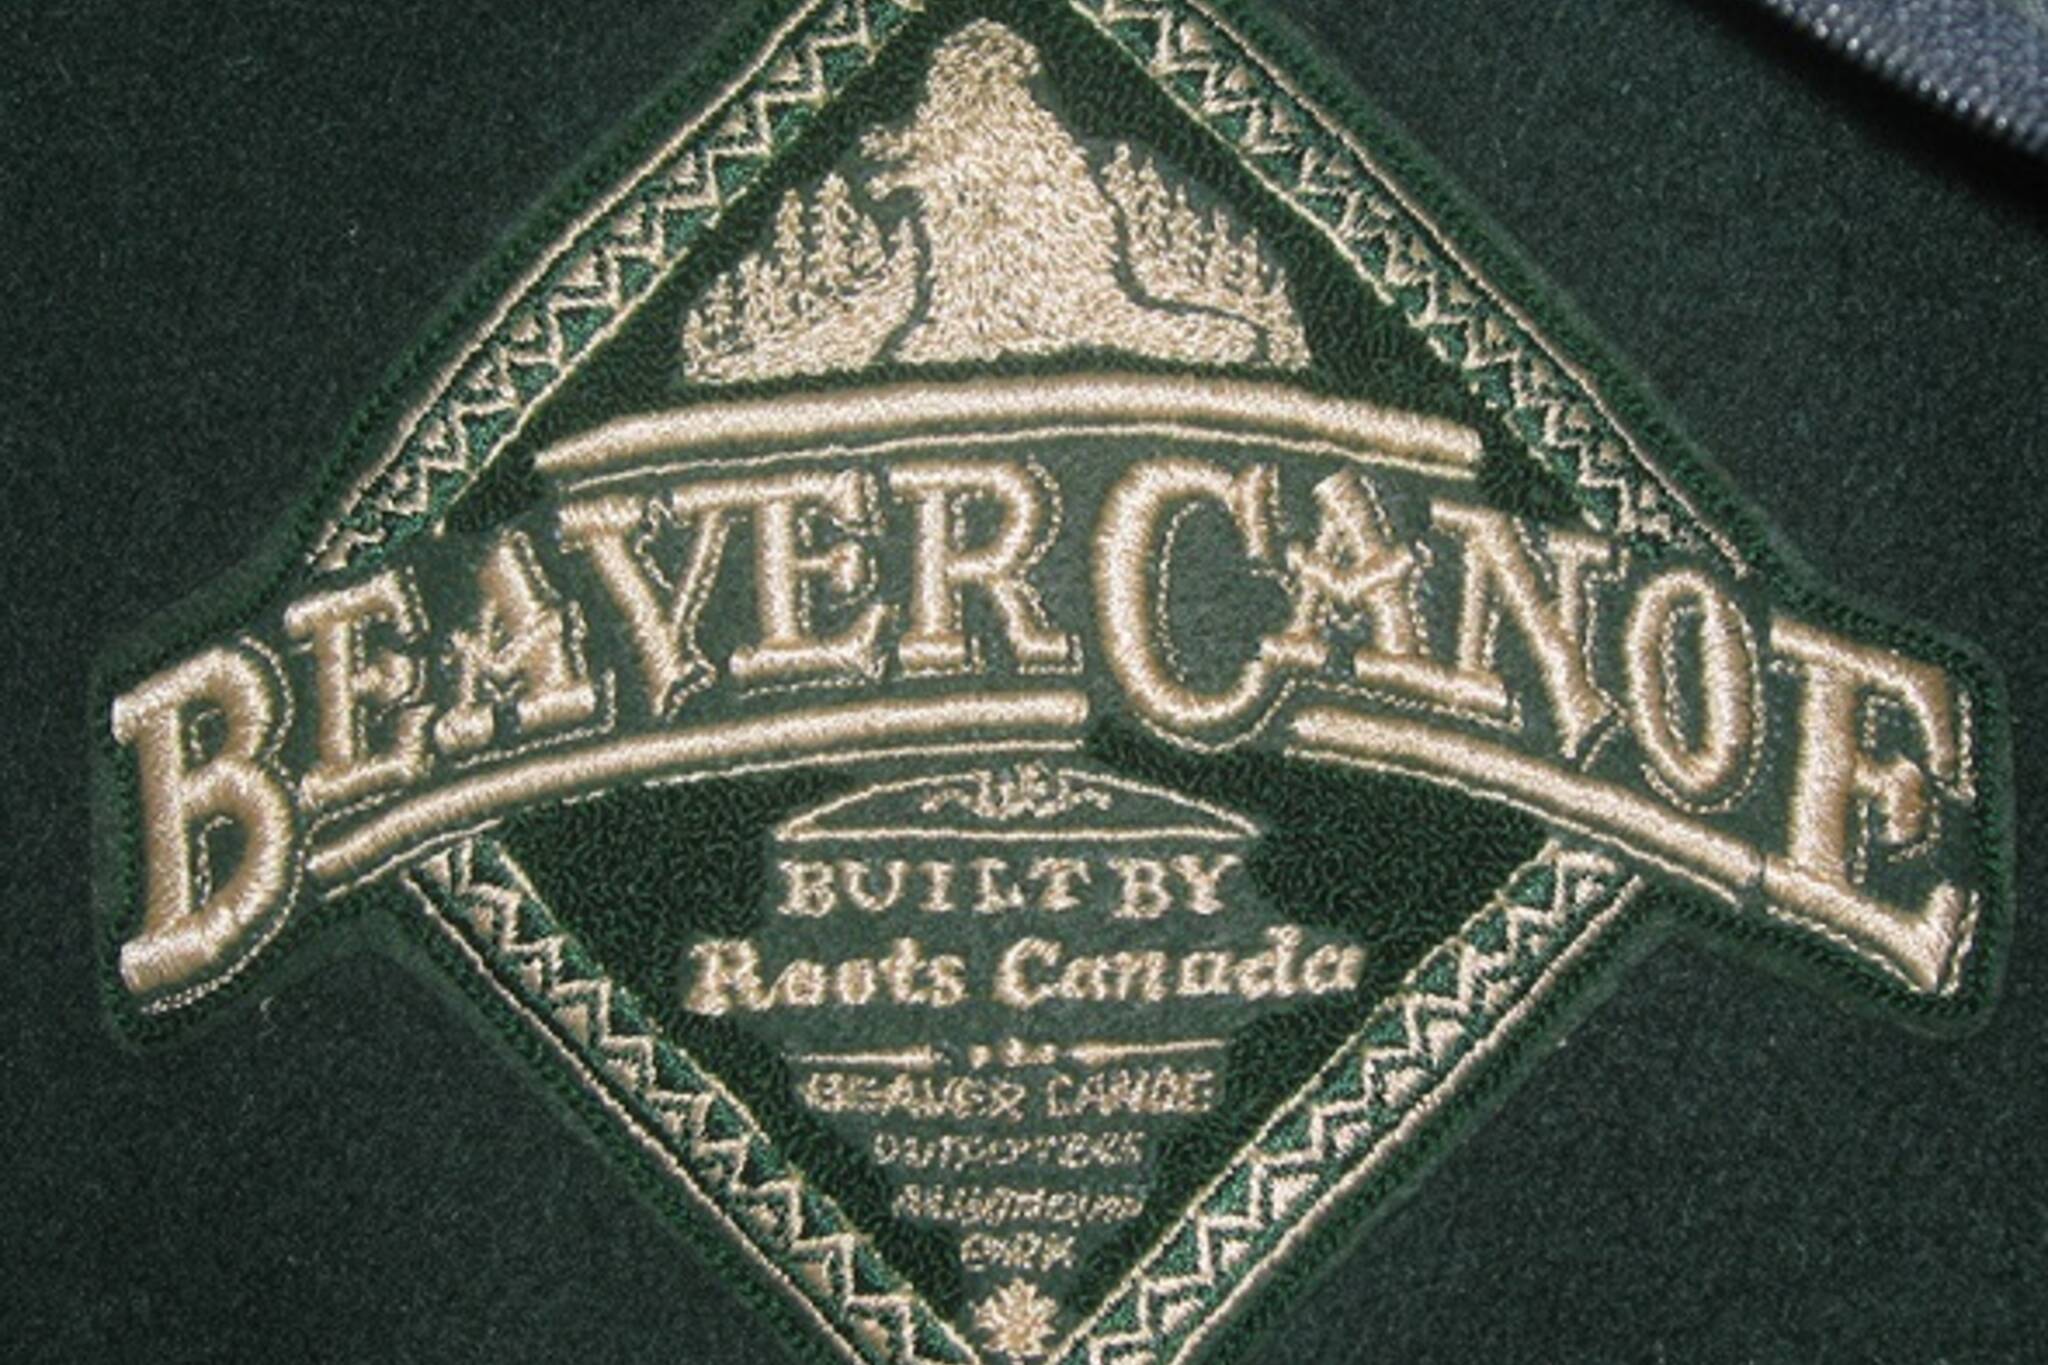 beaver canoe clothing company